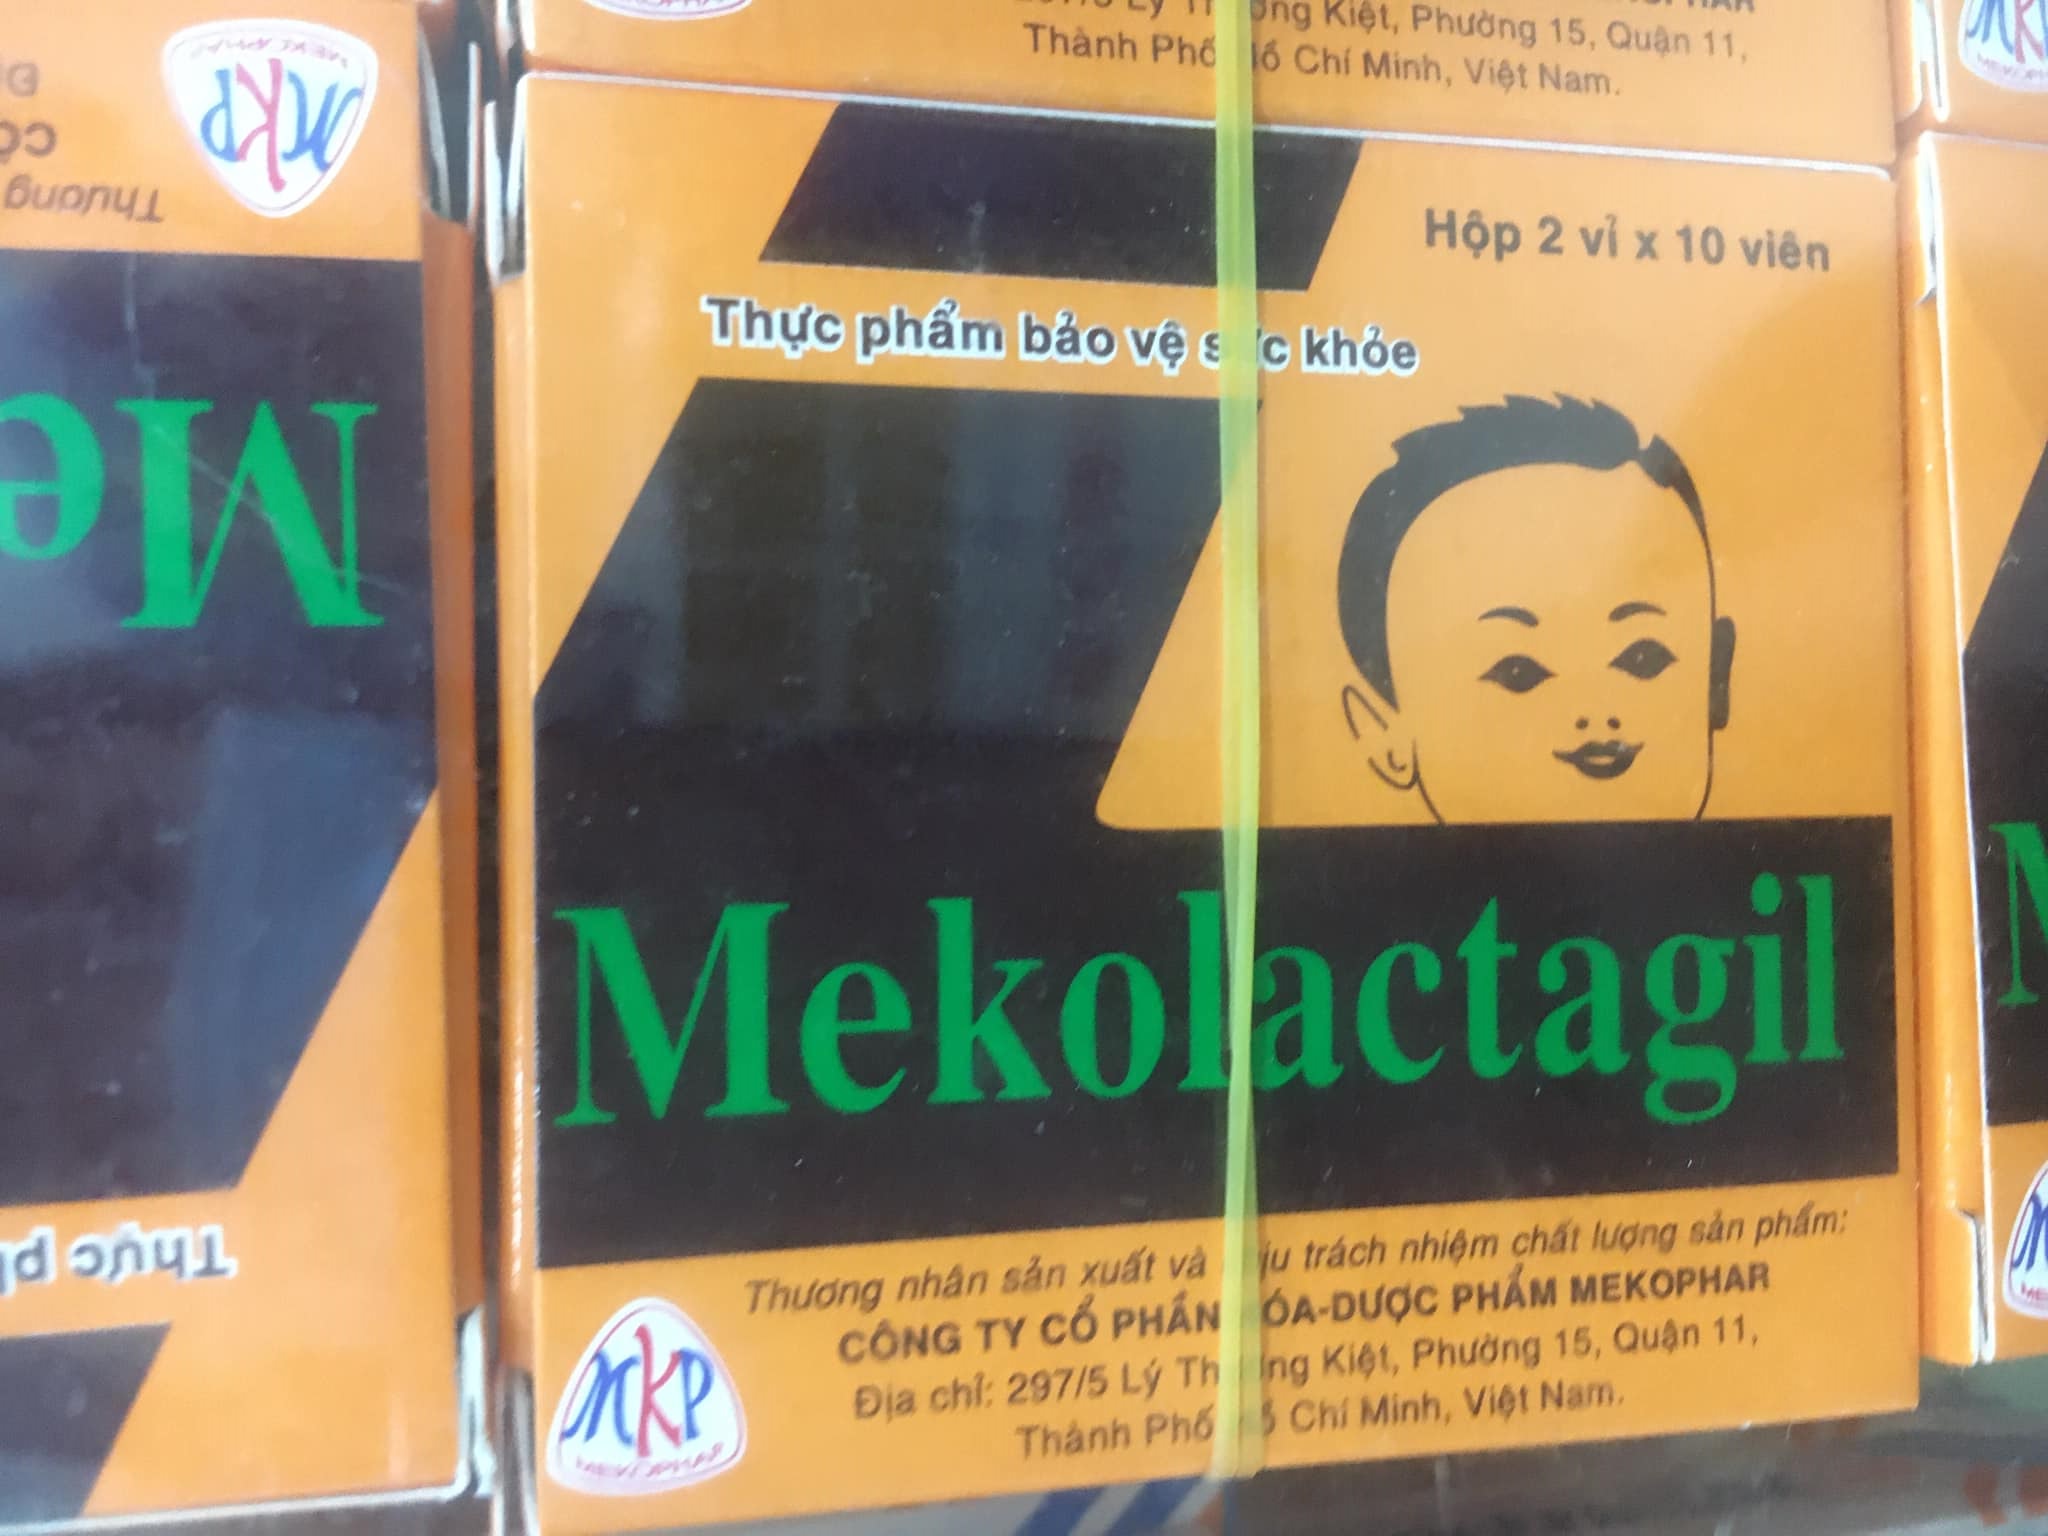 Mekolactagil